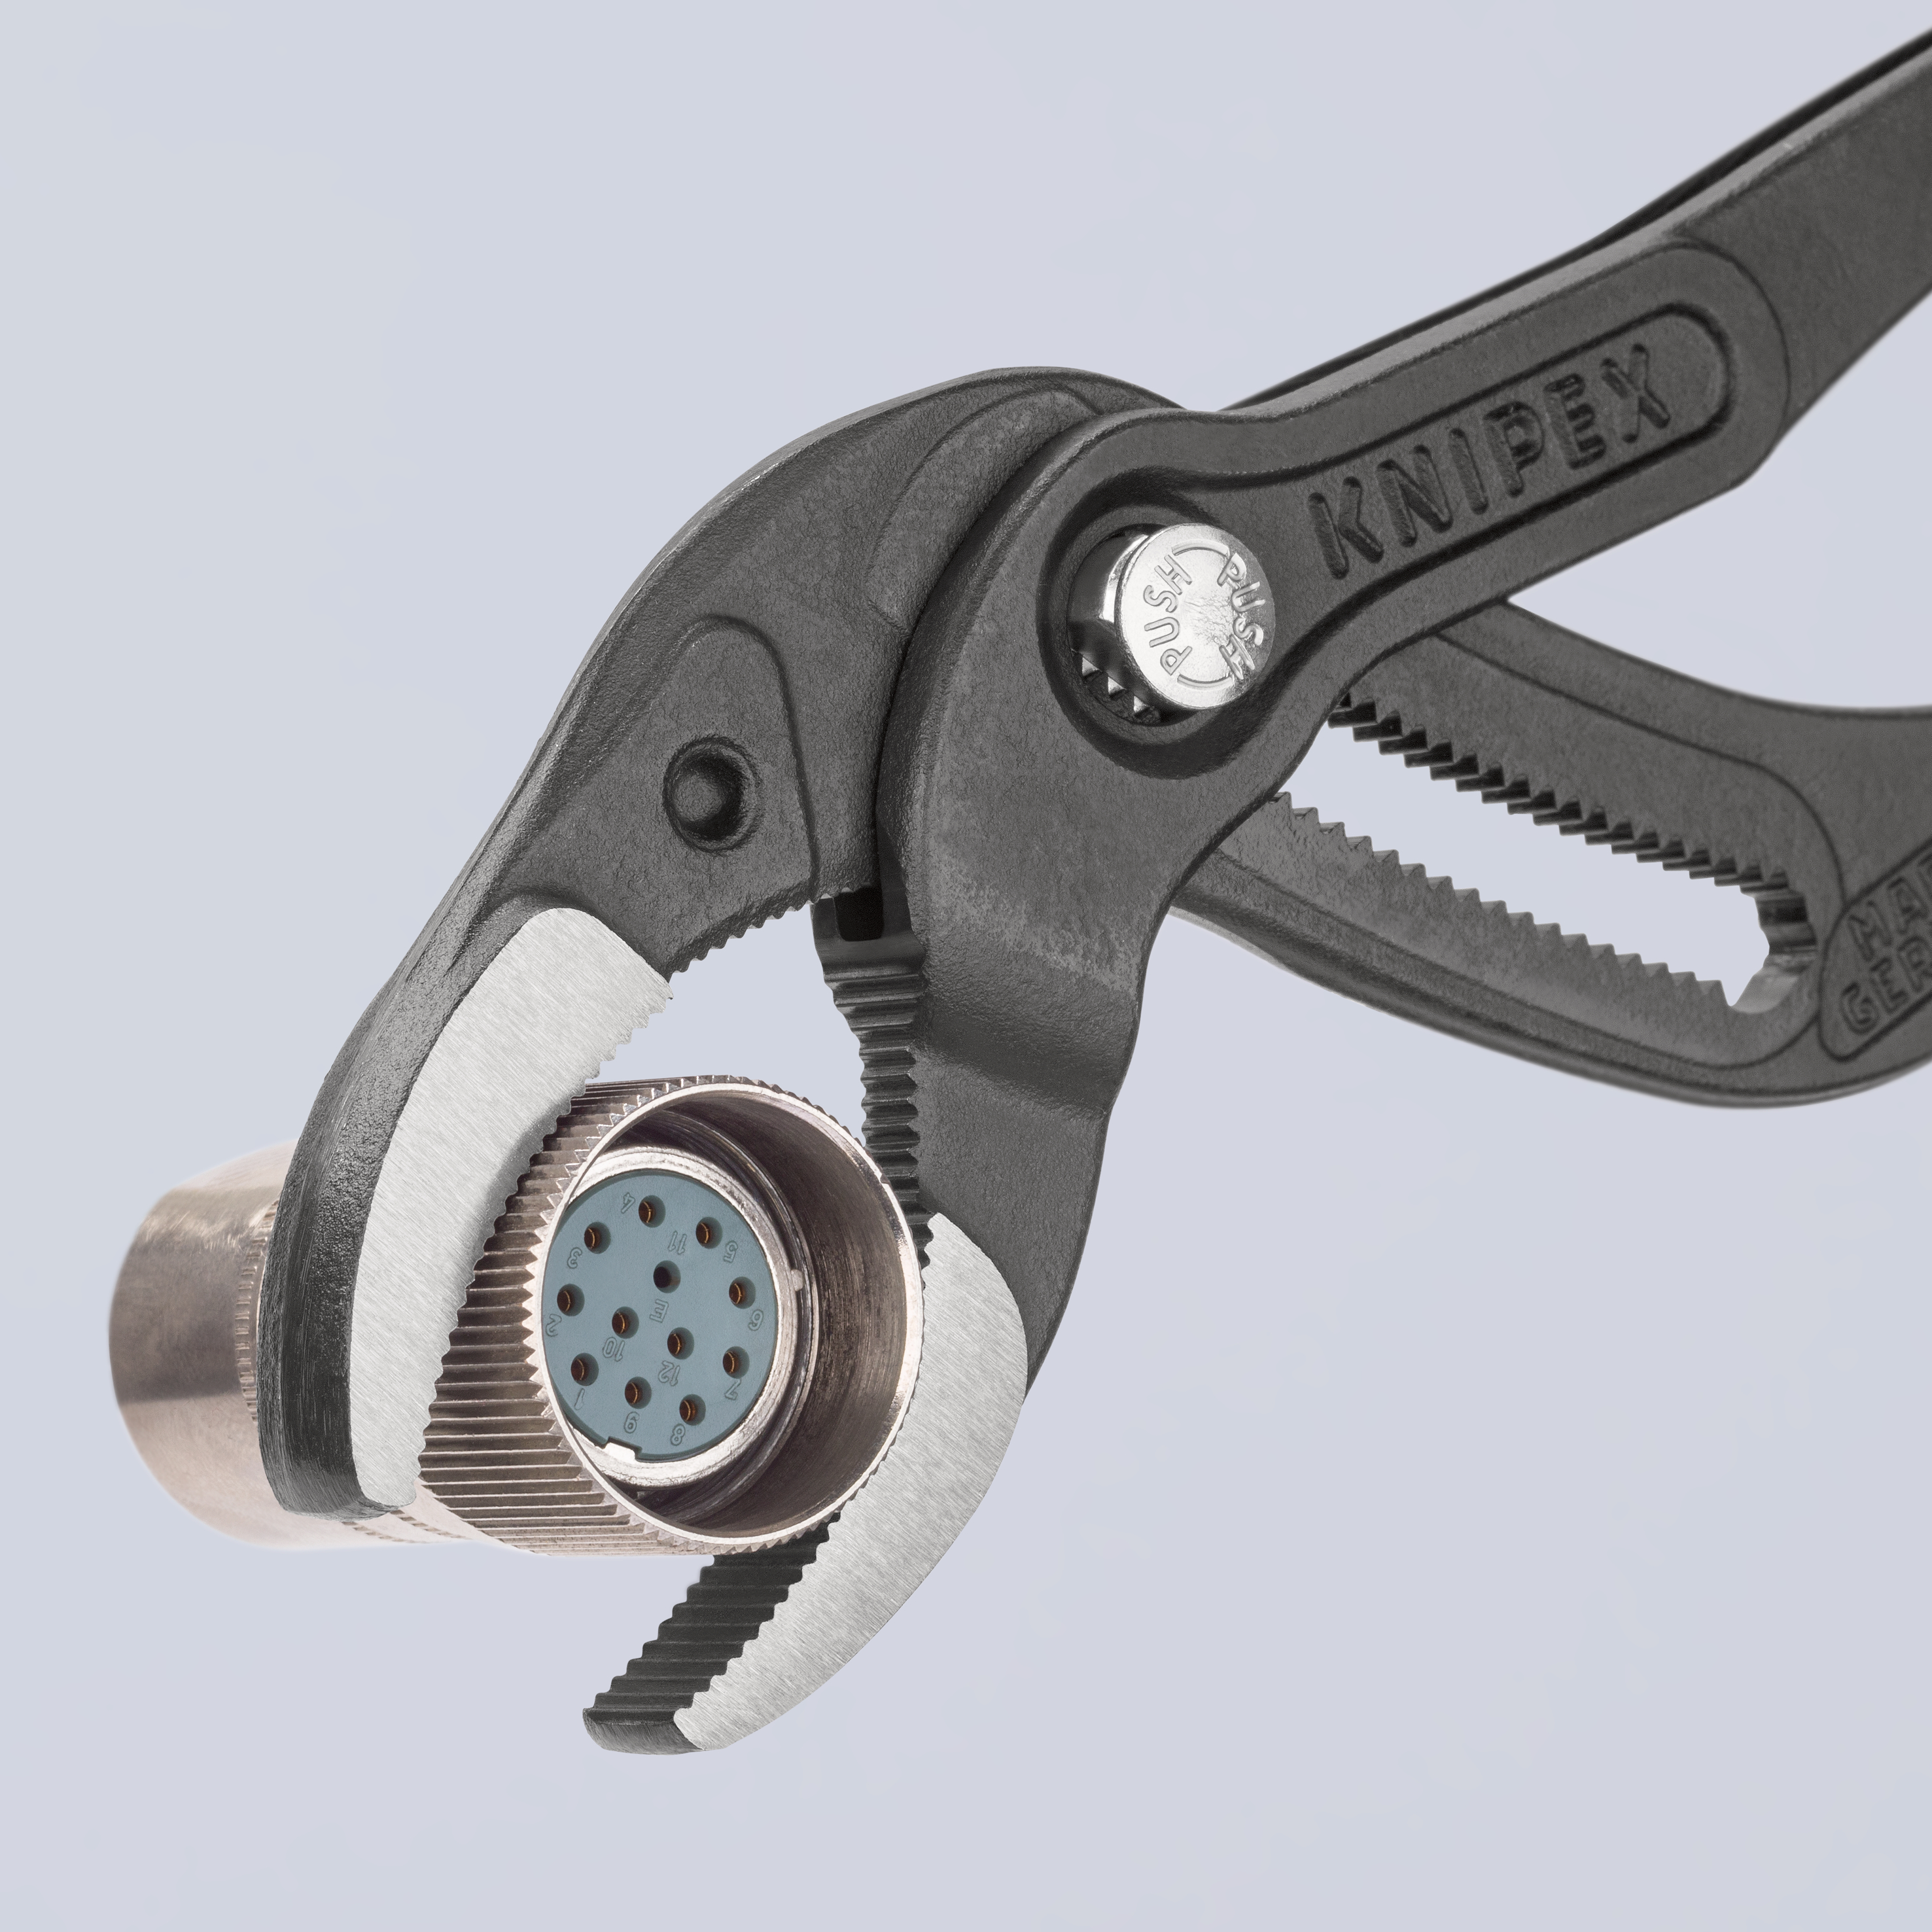 KNIPEX Siphon- und Connectorenzange "SpeedGrip" mit rutschhemmendem Kunststoff überzogen schwarz atr